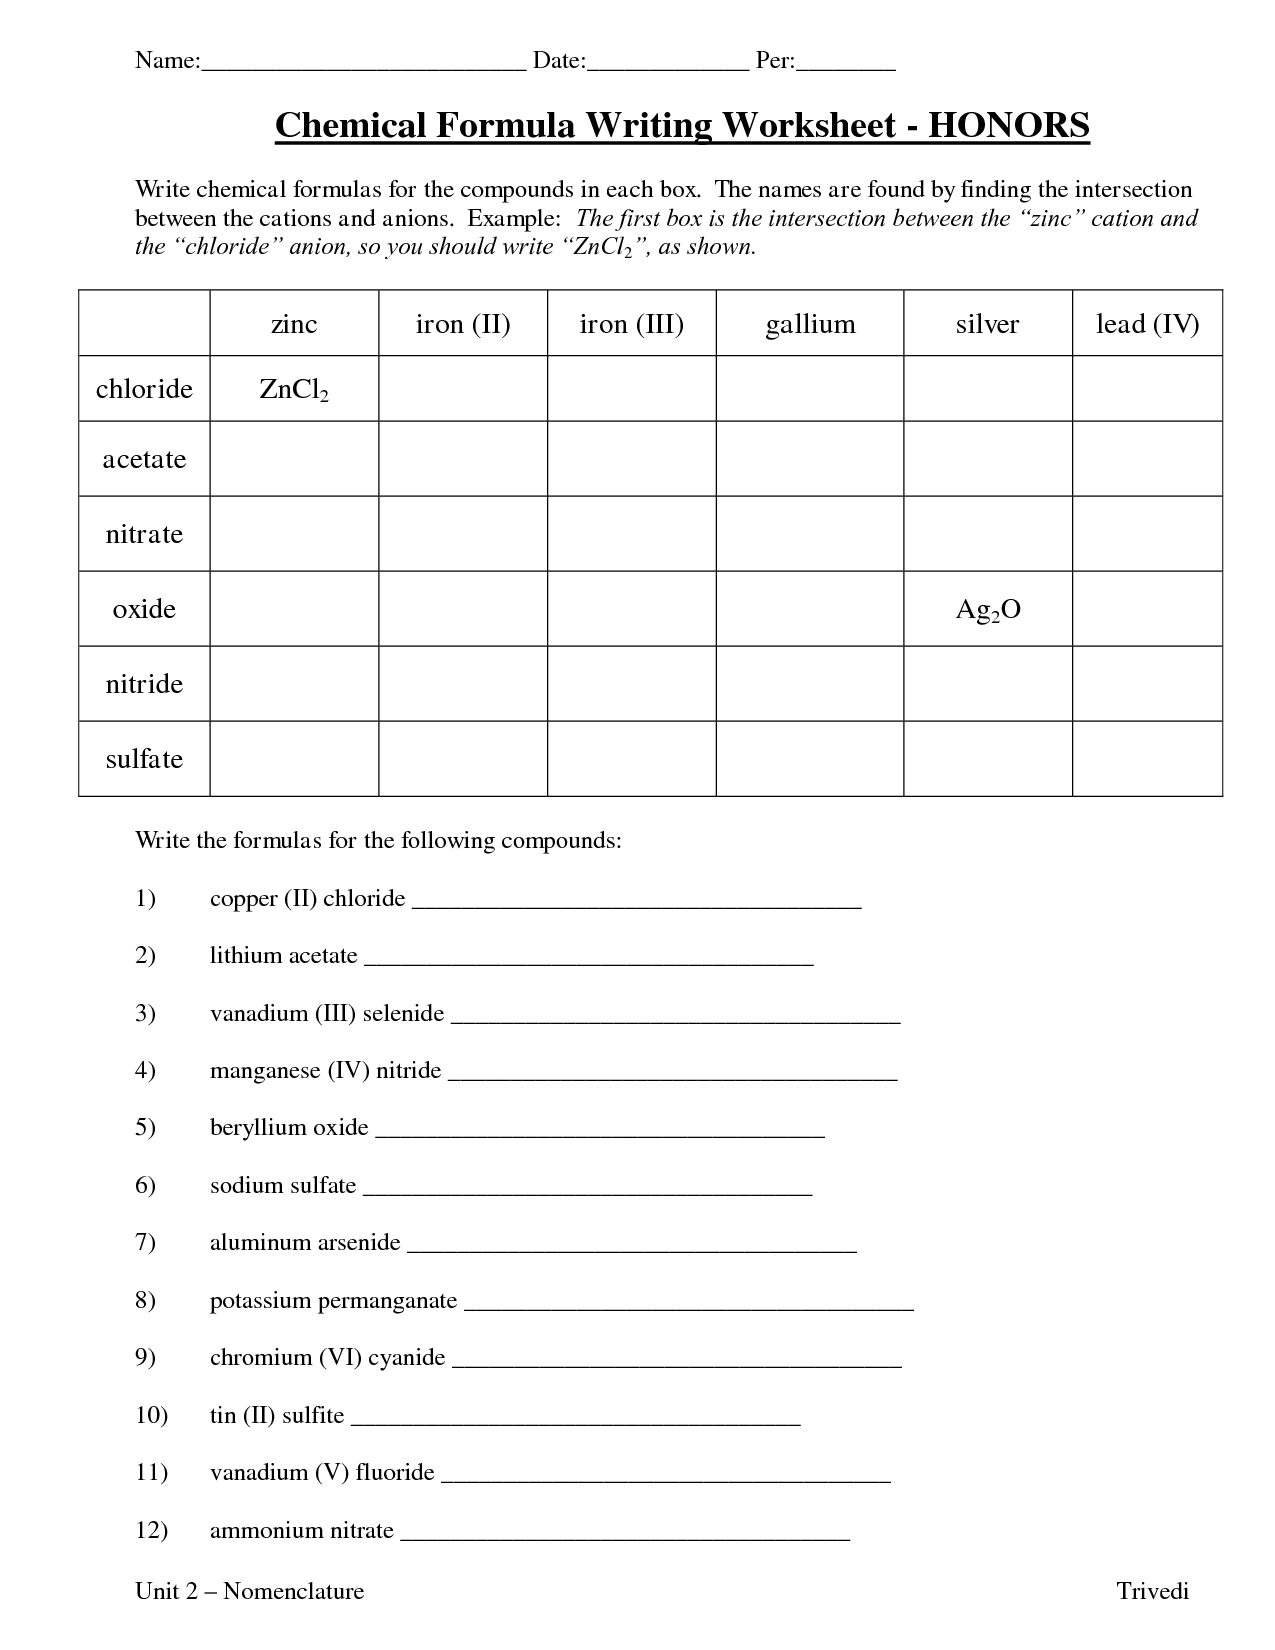 Chemical Formula Writing Worksheet Image